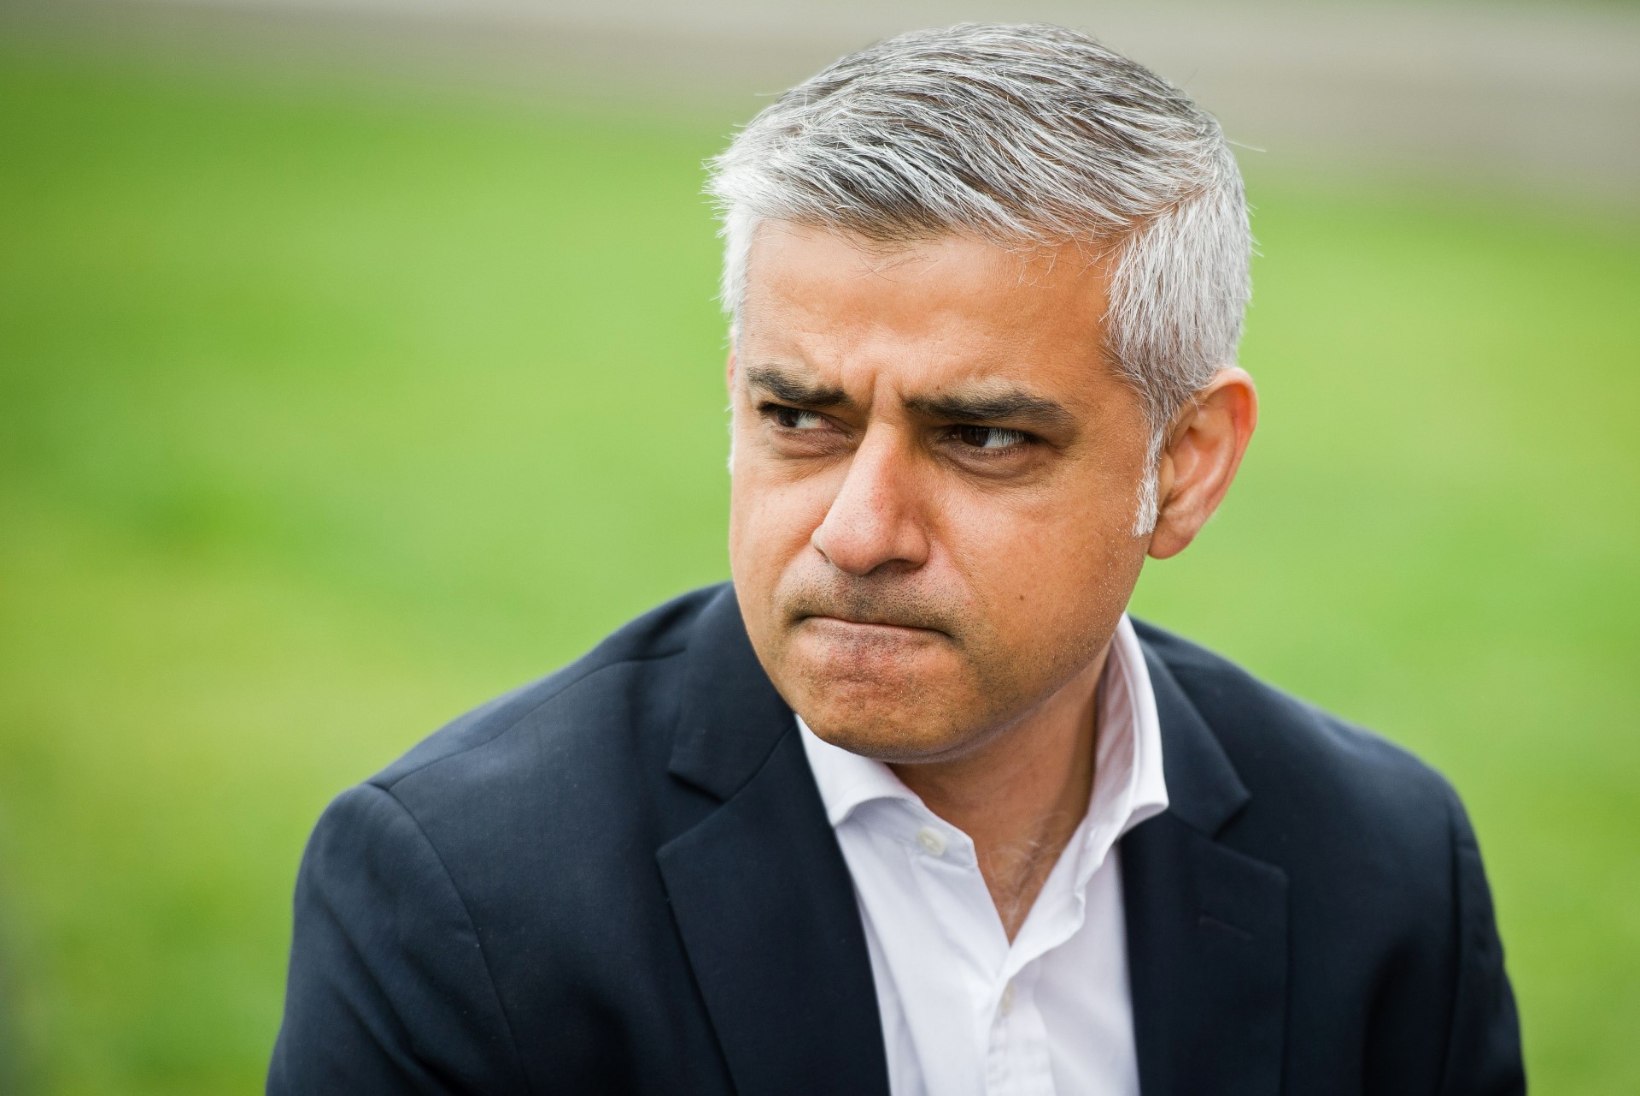 Londoni linnapea jätaks Trumpi punase vaibata